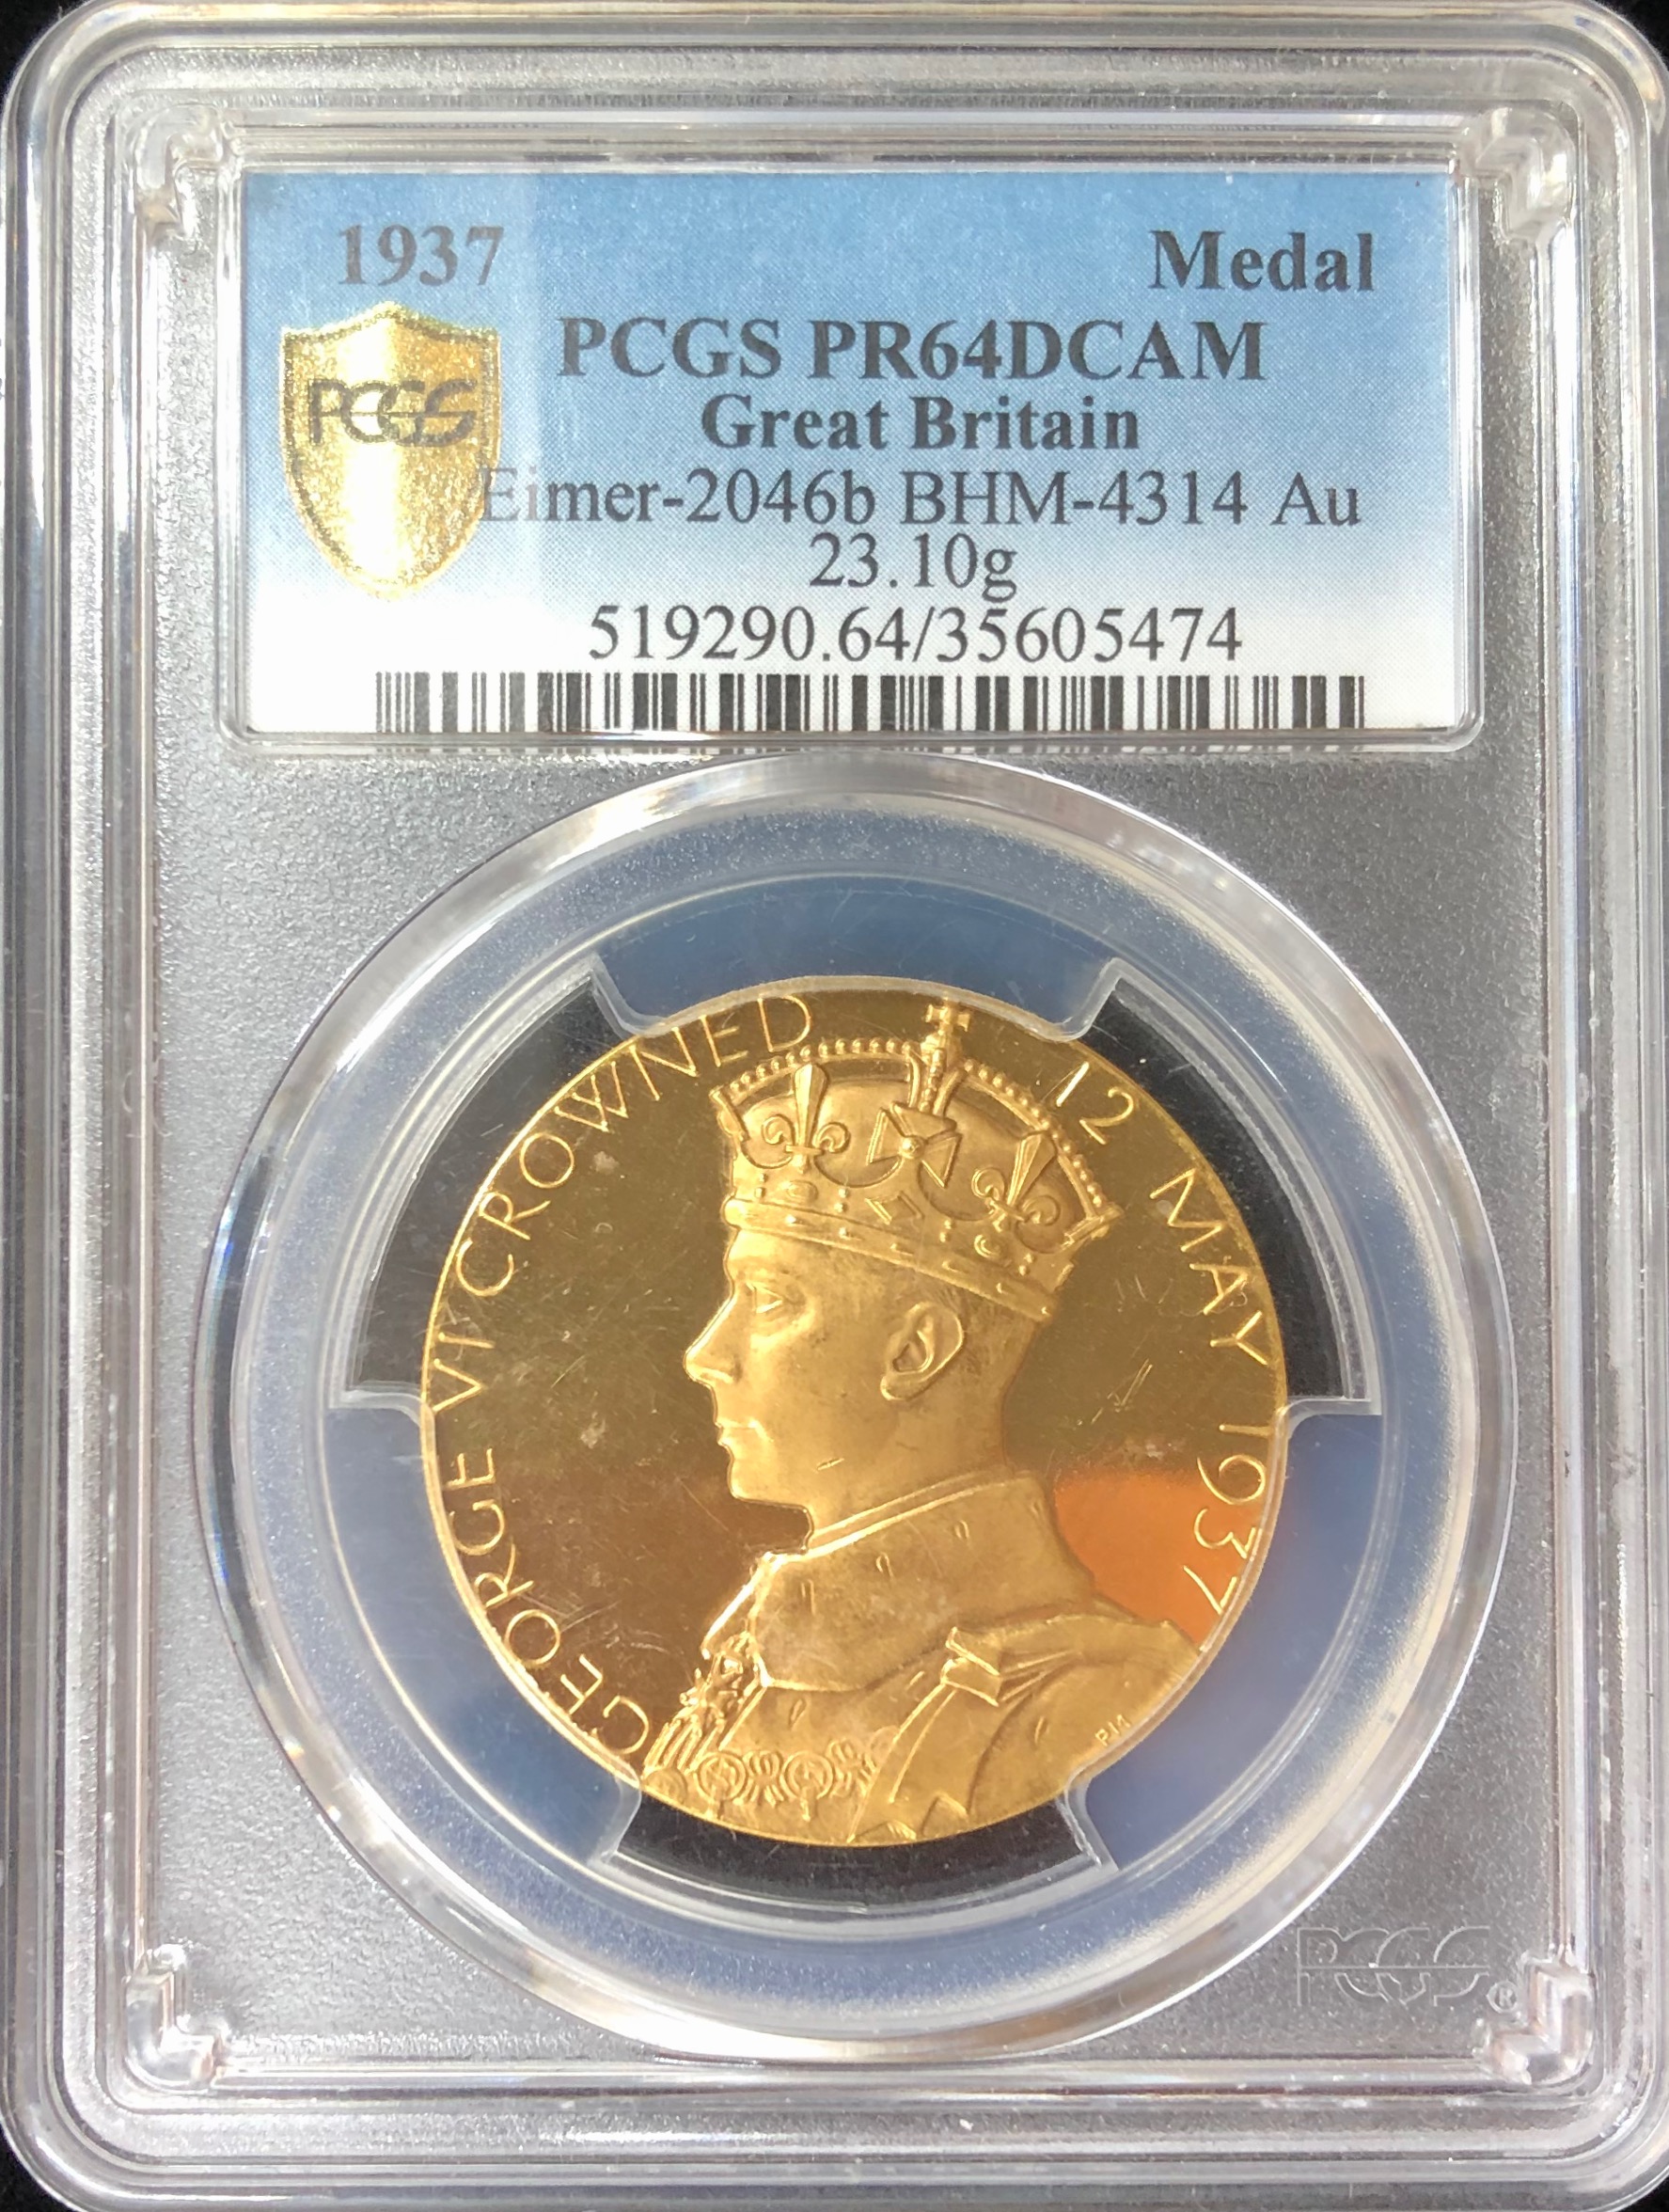 イギリス1937年ジョージ6世戴冠ゴールドメダルPCGS PR64DCAM画像